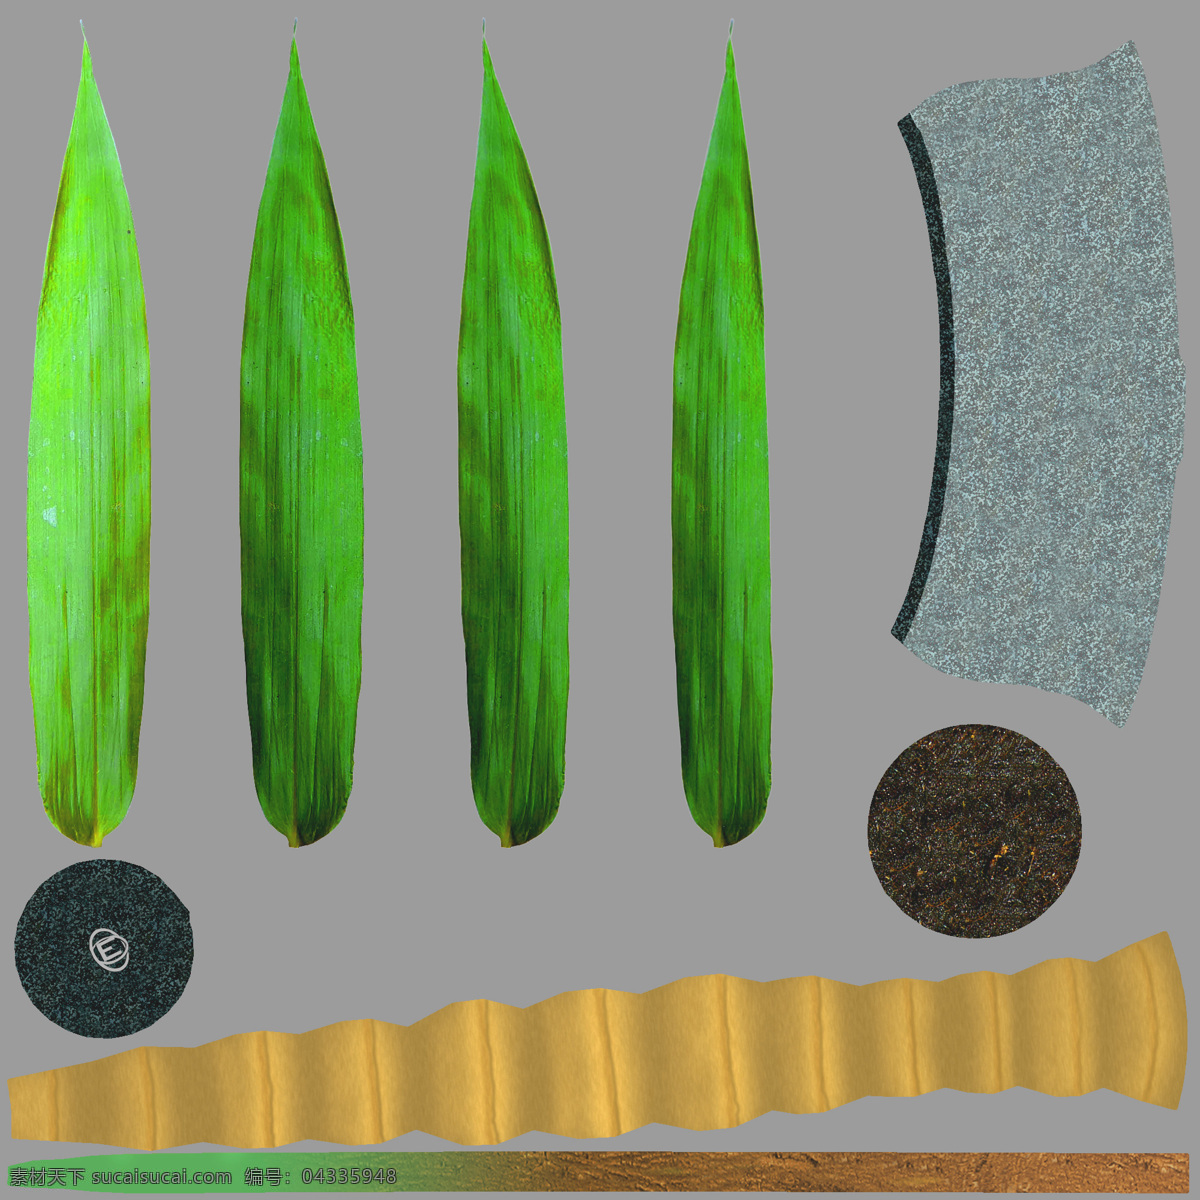 绿色 尖 叶子 植物 盆栽 3d 模型 室内 特别 尖叶子 模型素材